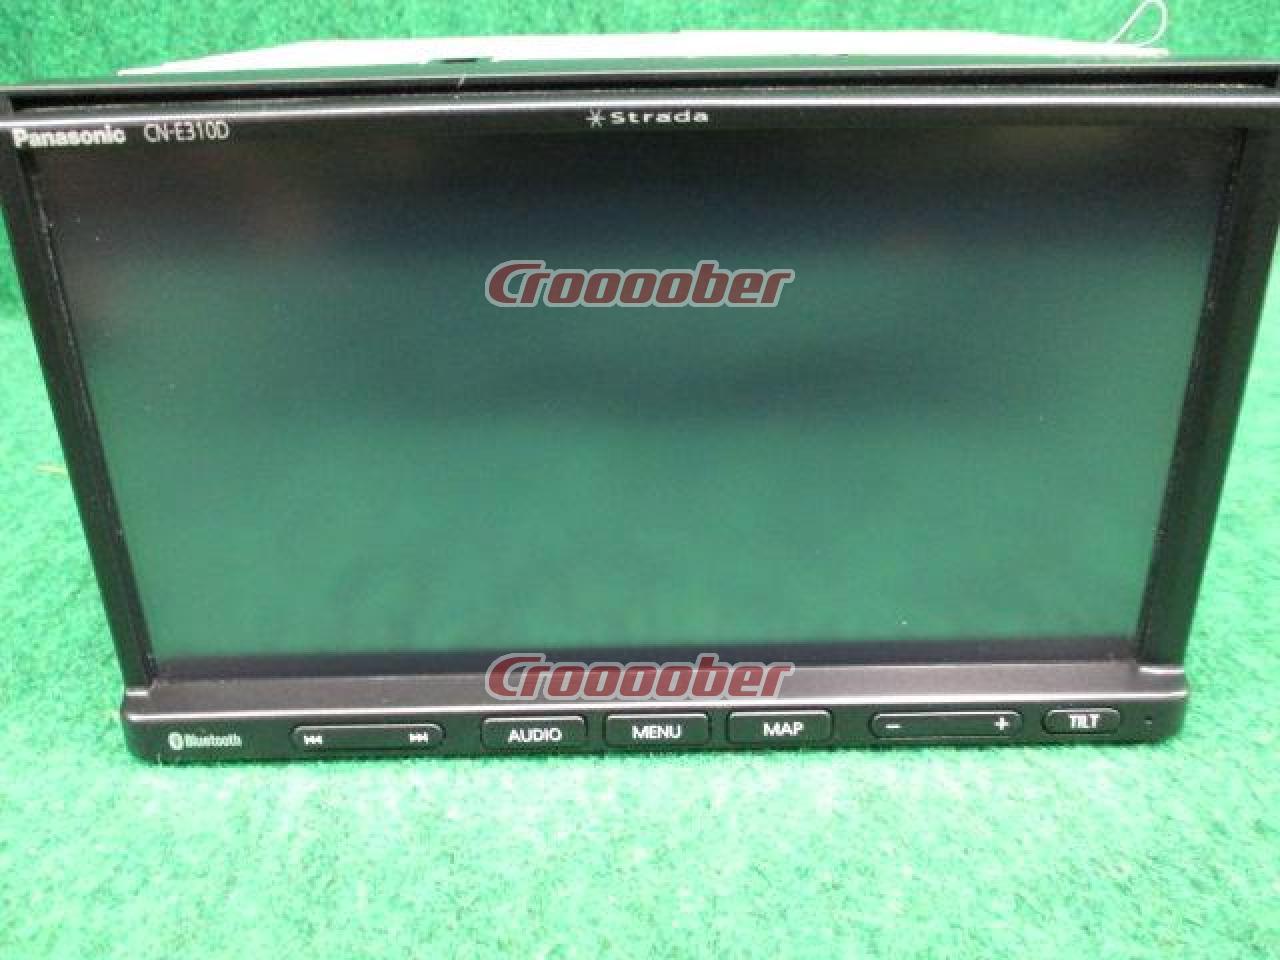 Panasonic CN-E310D 7V Type 1Seg, Bluetooth Built-in / CD / SD